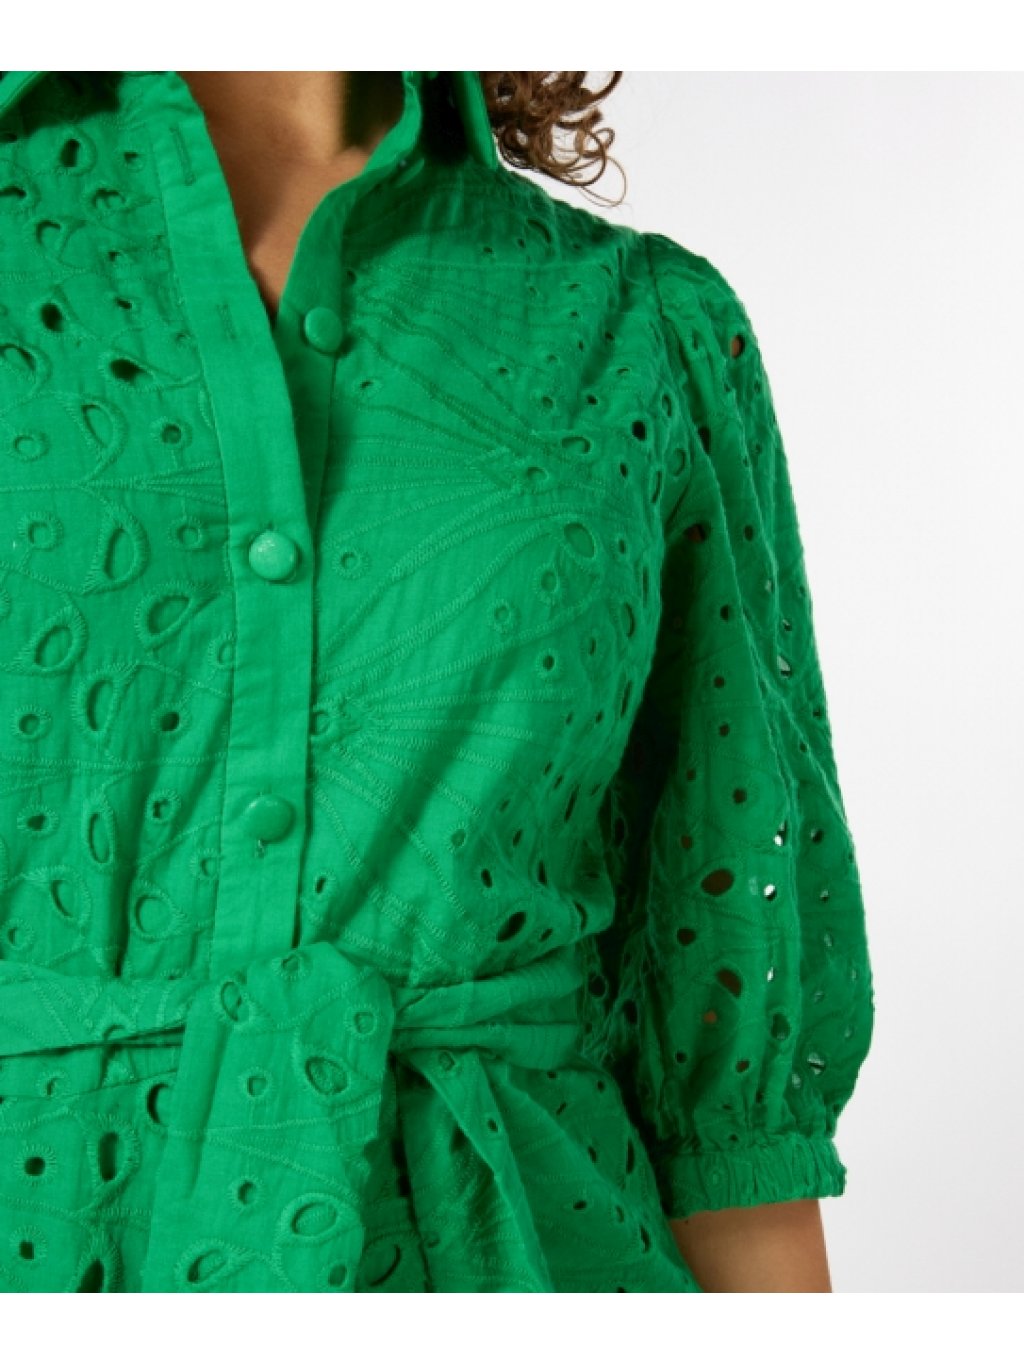 Šaty Esqualo 32200 zelené krajkové s límečkem